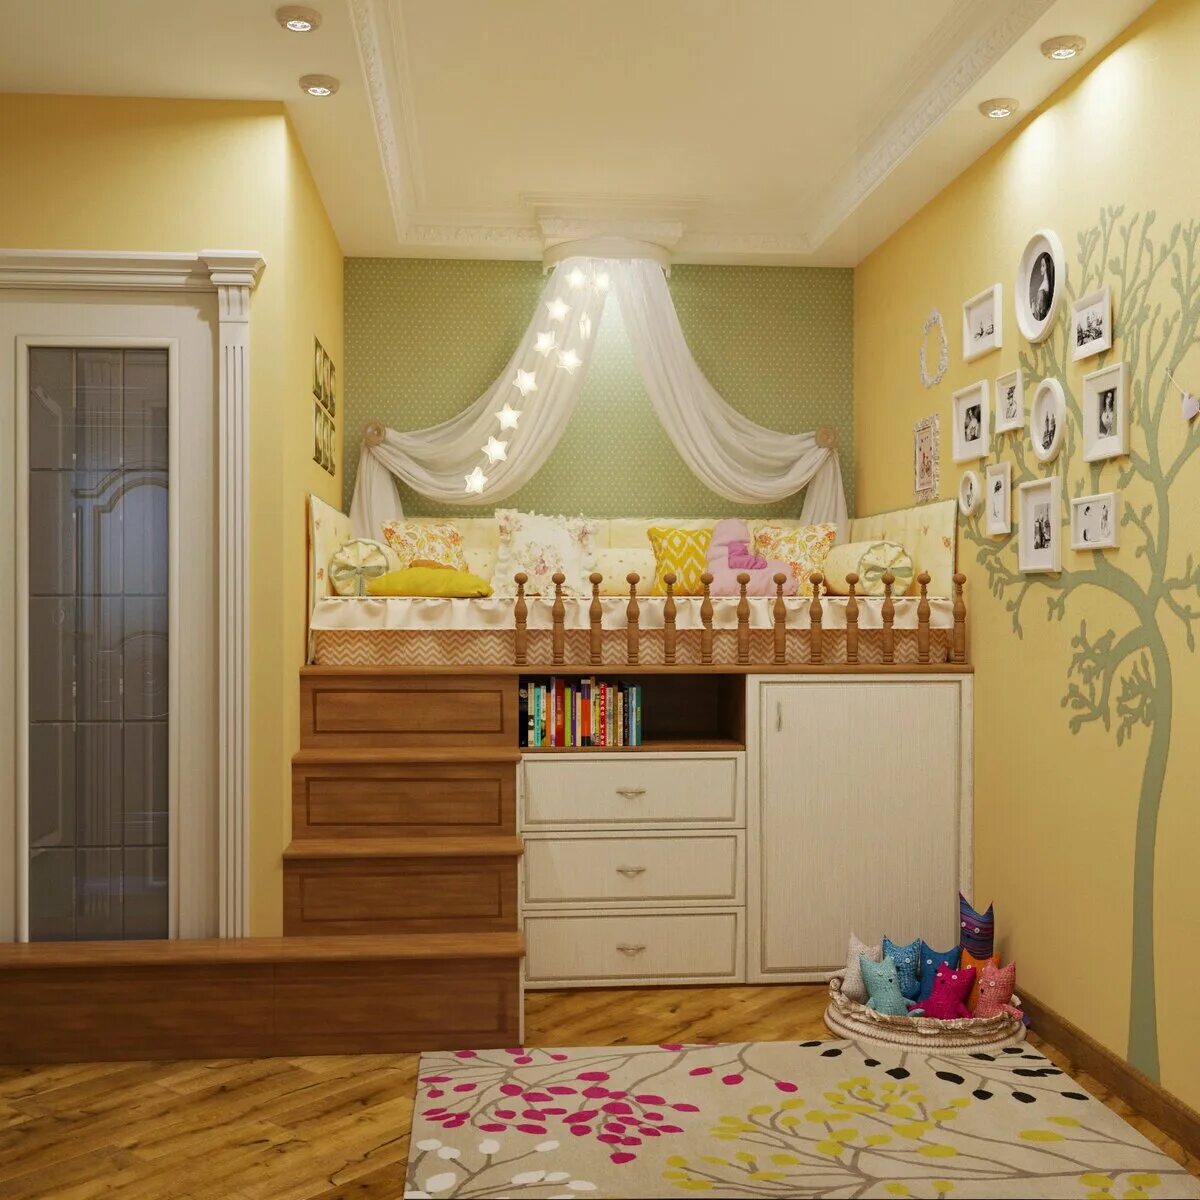 Квартира для мамы. Комната для мамы. Планировка комнаты для мамы и Дочки. Простая детская комната. Детская комната для Дочки.